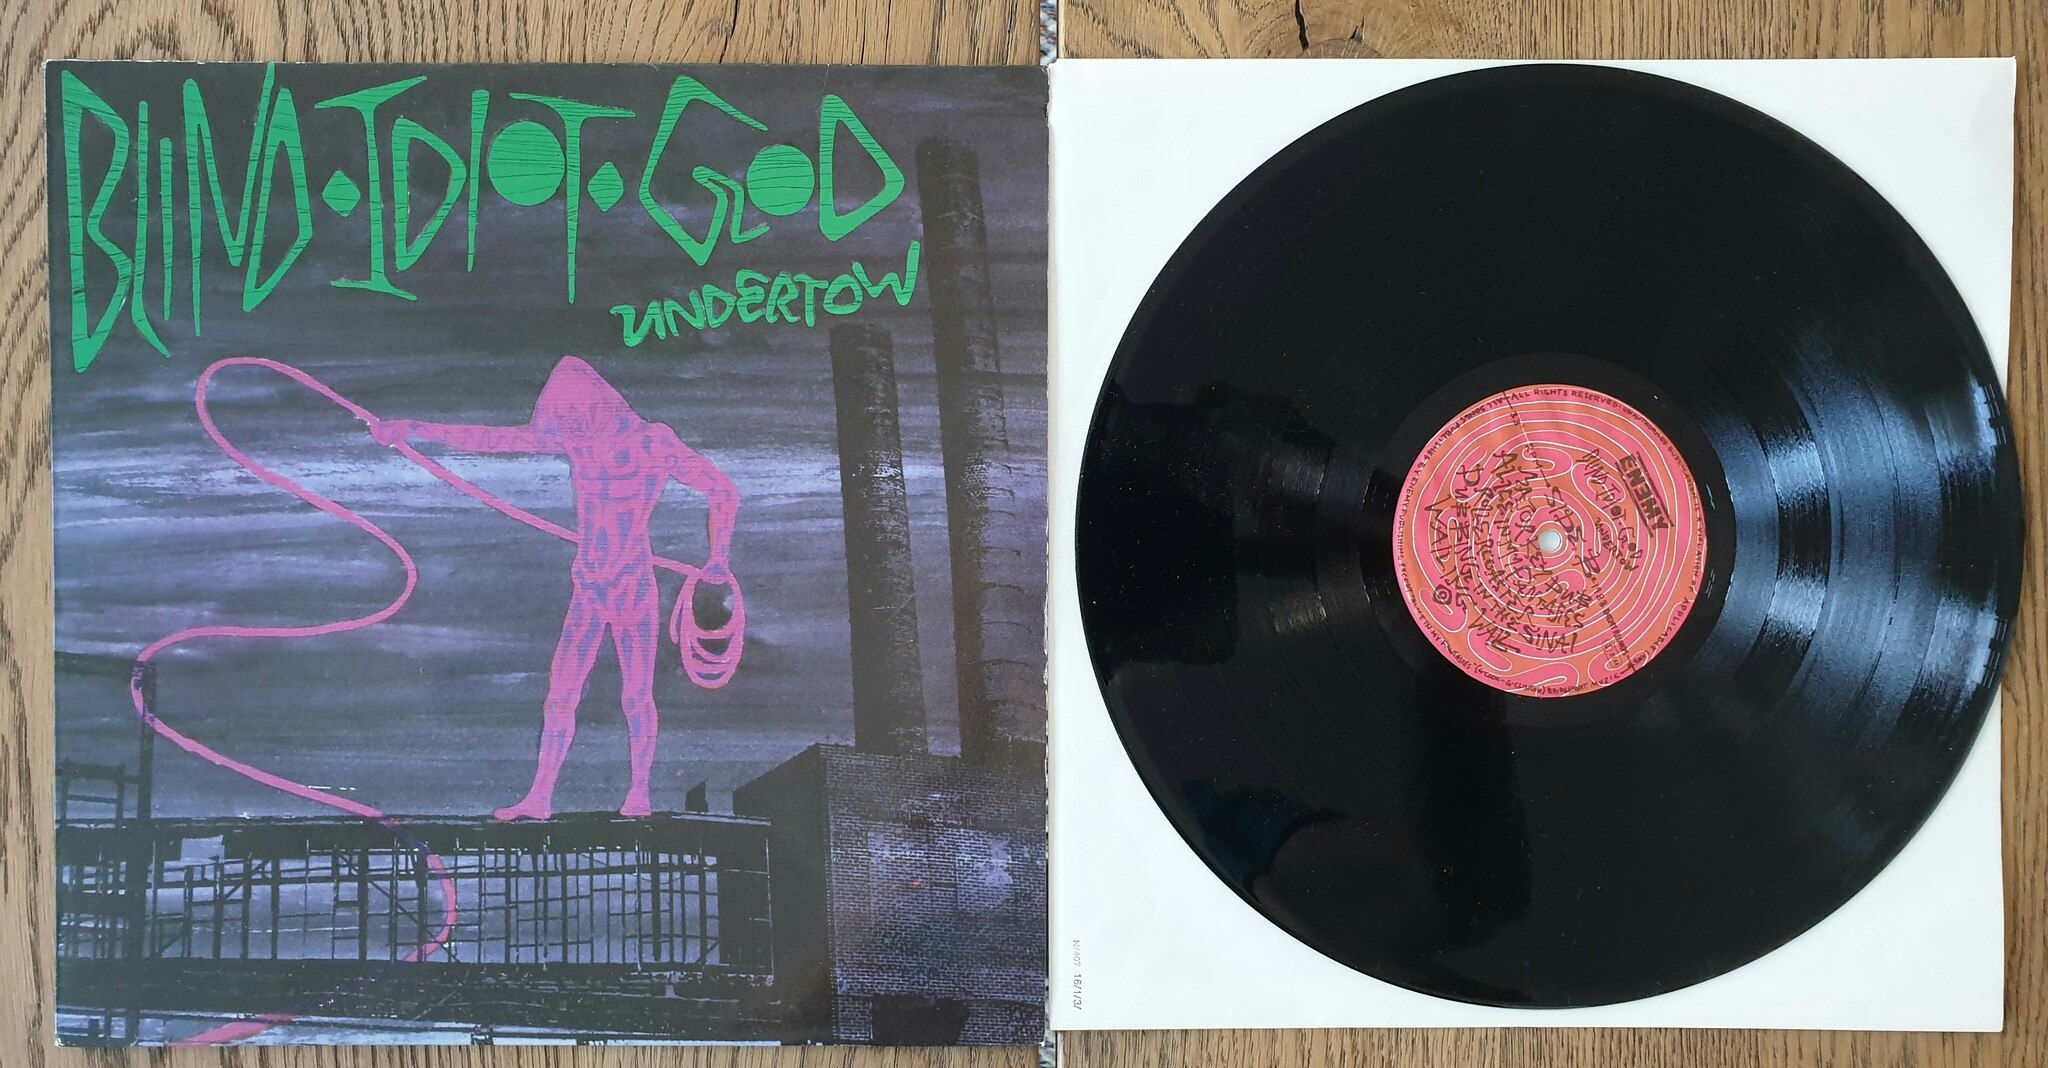 Undertow, Blind idiot god. Vinyl LP